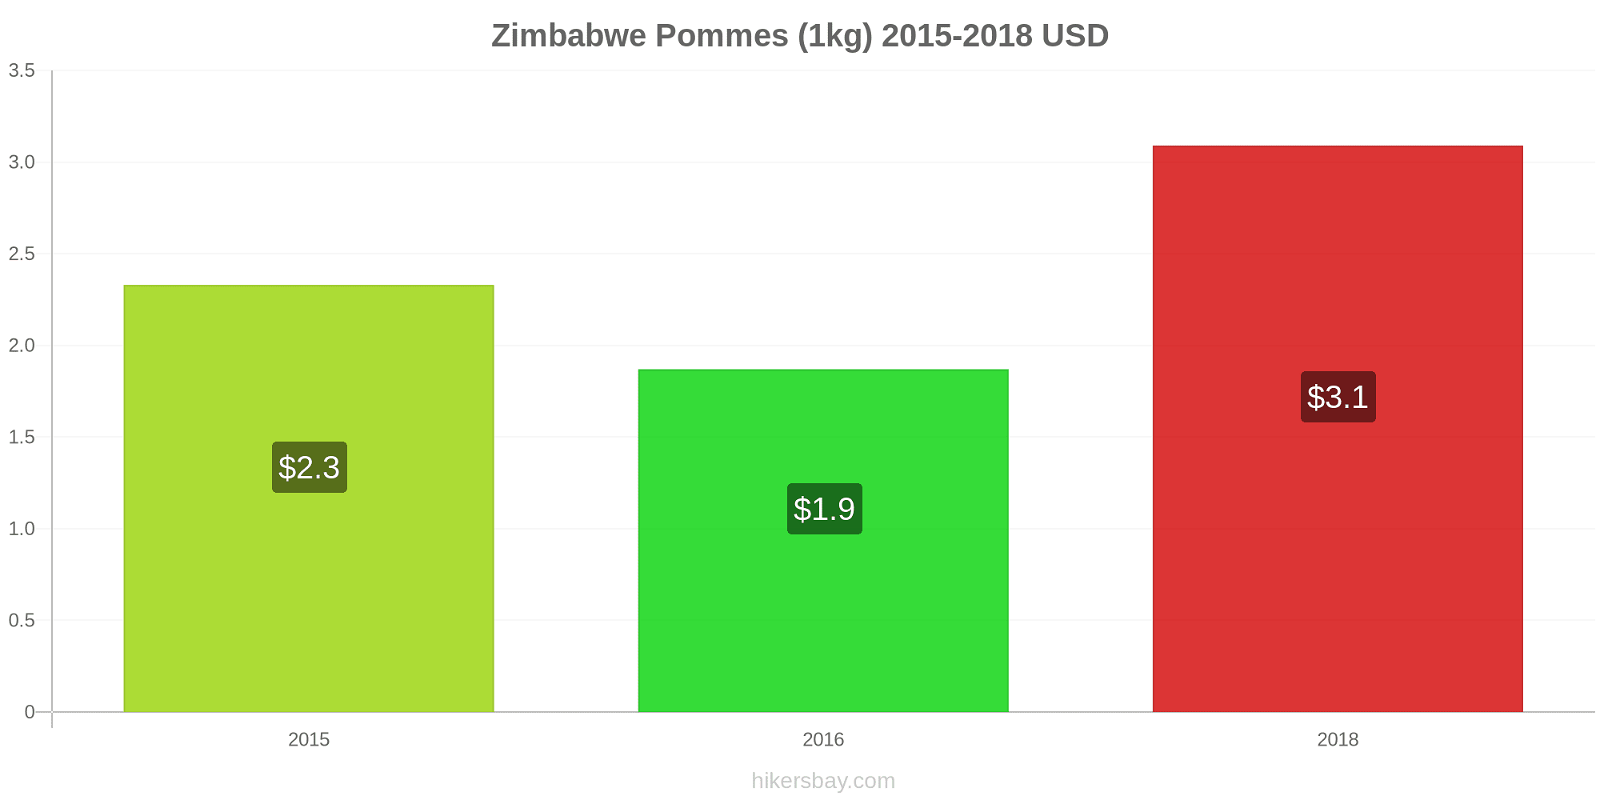 Zimbabwe changements de prix Pommes (1kg) hikersbay.com